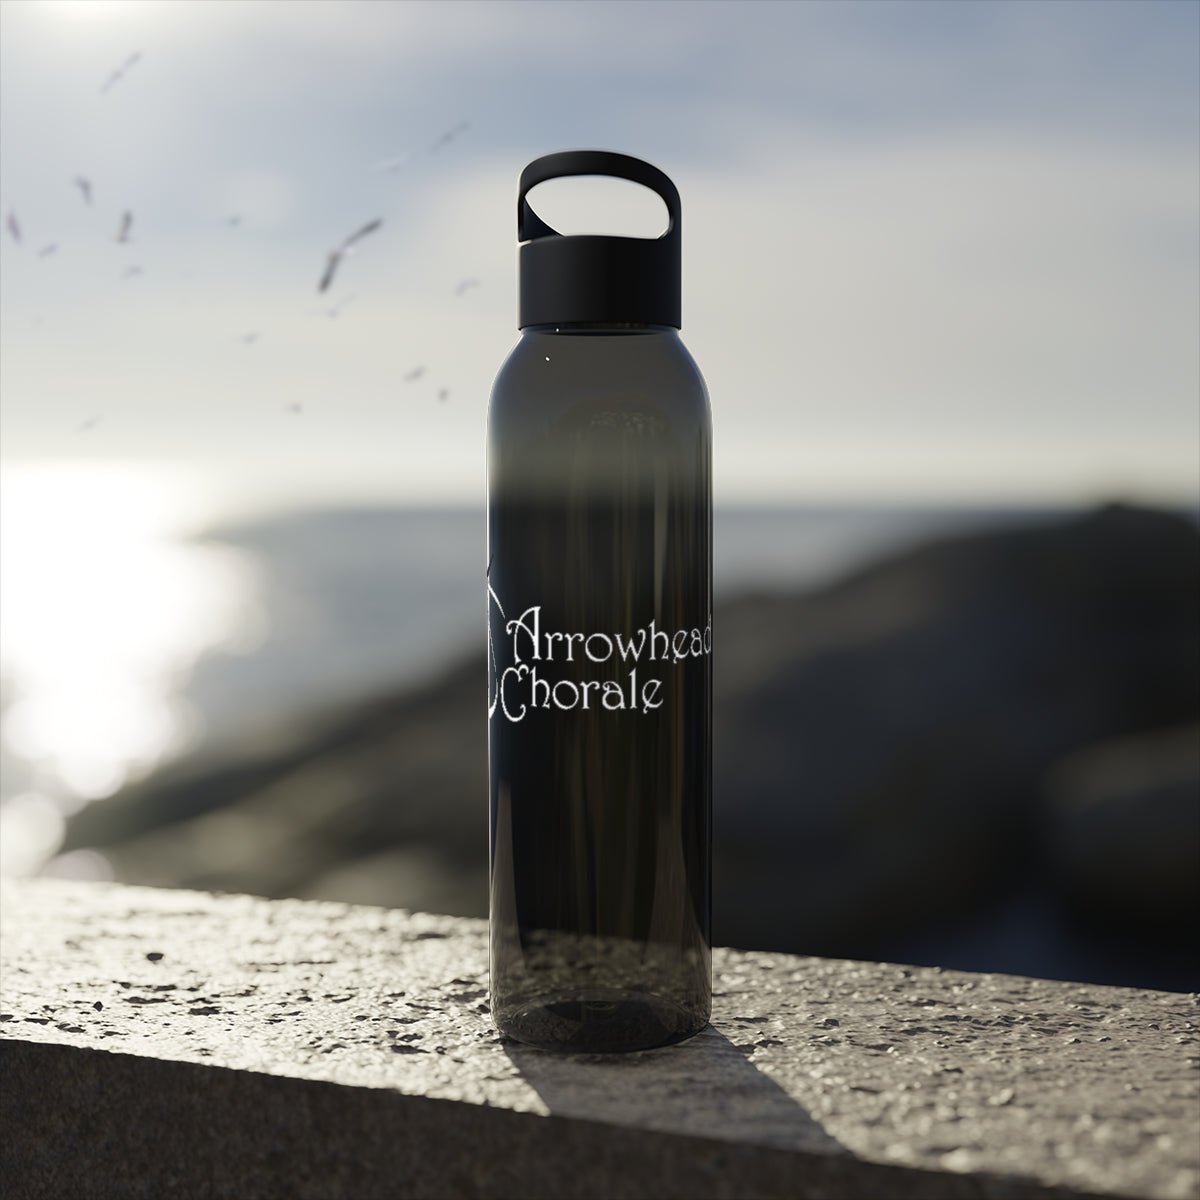 Arrowhead Chorale Sky Water Bottle - DSP On Demand